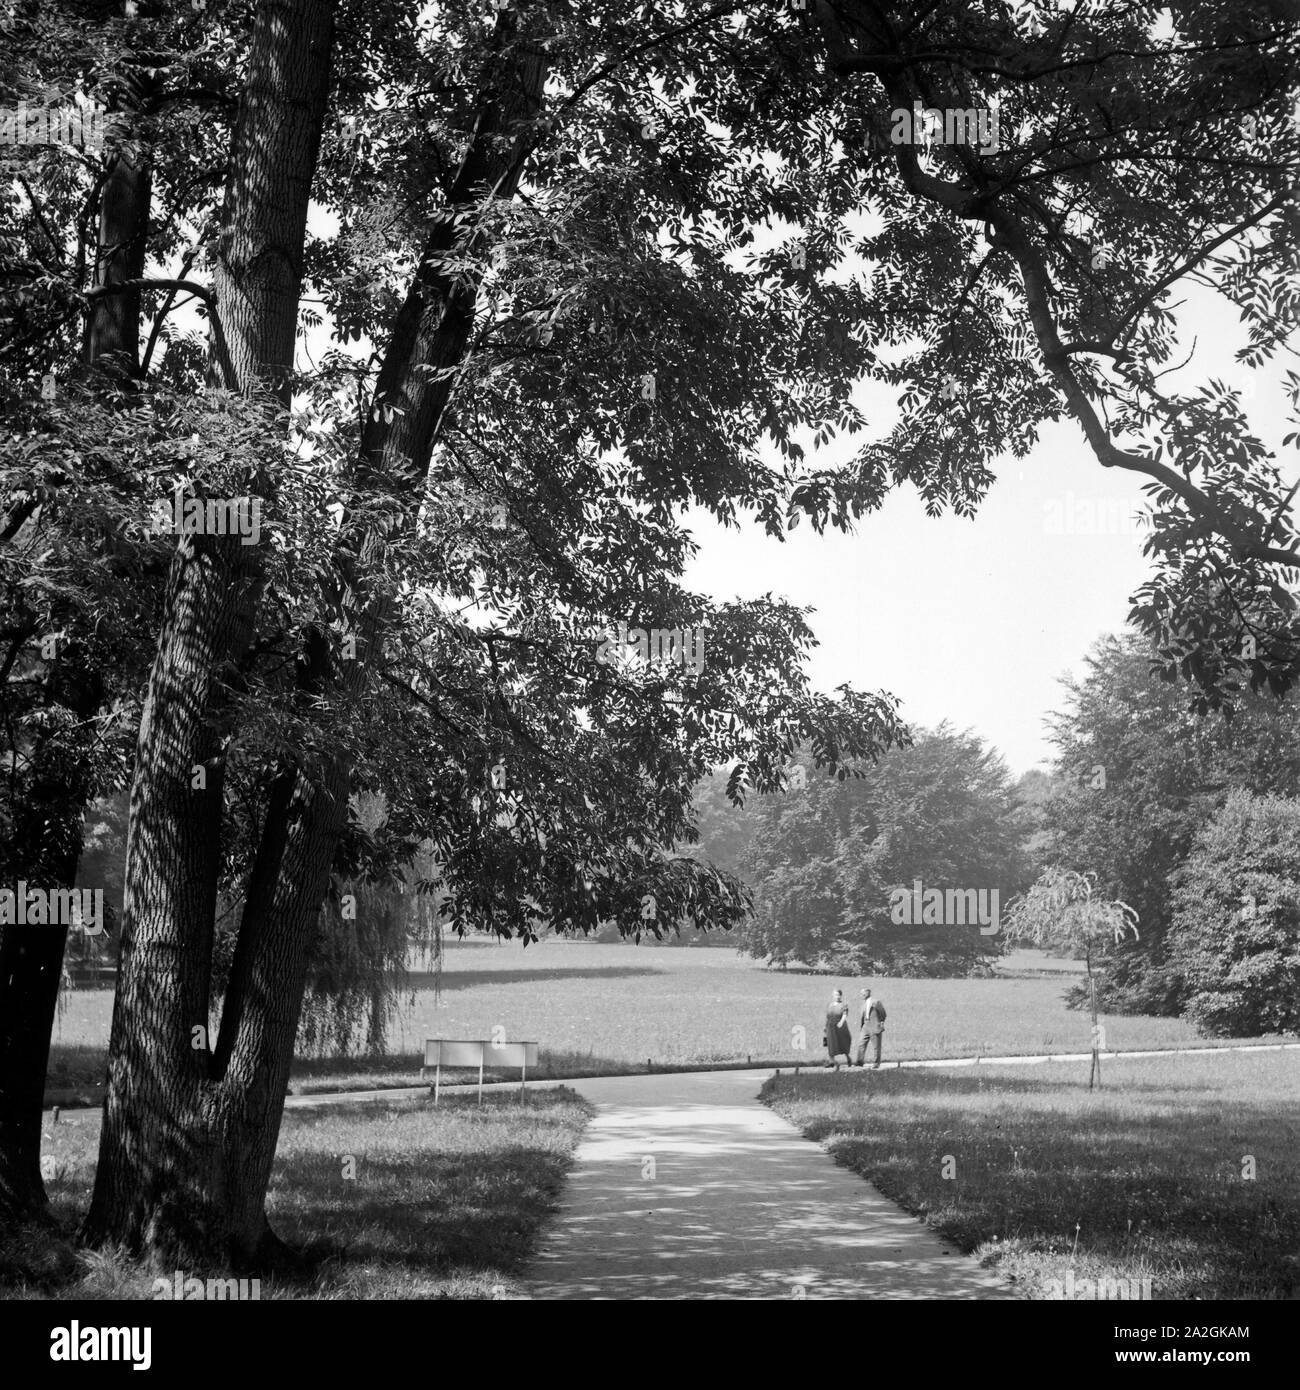 Ein Paar spaziert durch den von Kurpark de Bad Homburg, Deutschland 1930 er Jahre. Un couple se promenant dans les jardins de la station thermale de Bad Homburg, Allemagne 1930. Banque D'Images